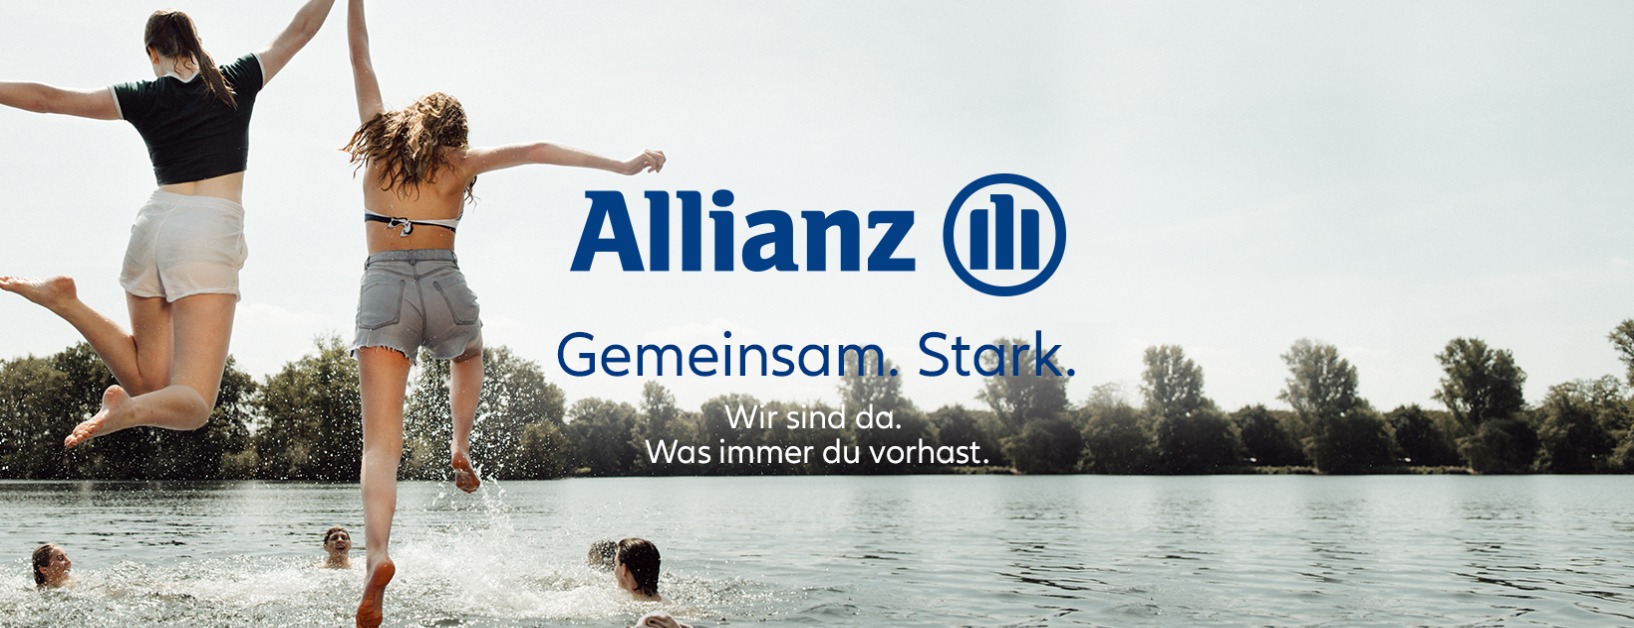 Allianz Versicherung Mirco Böttcher Seevetal - Corona Style